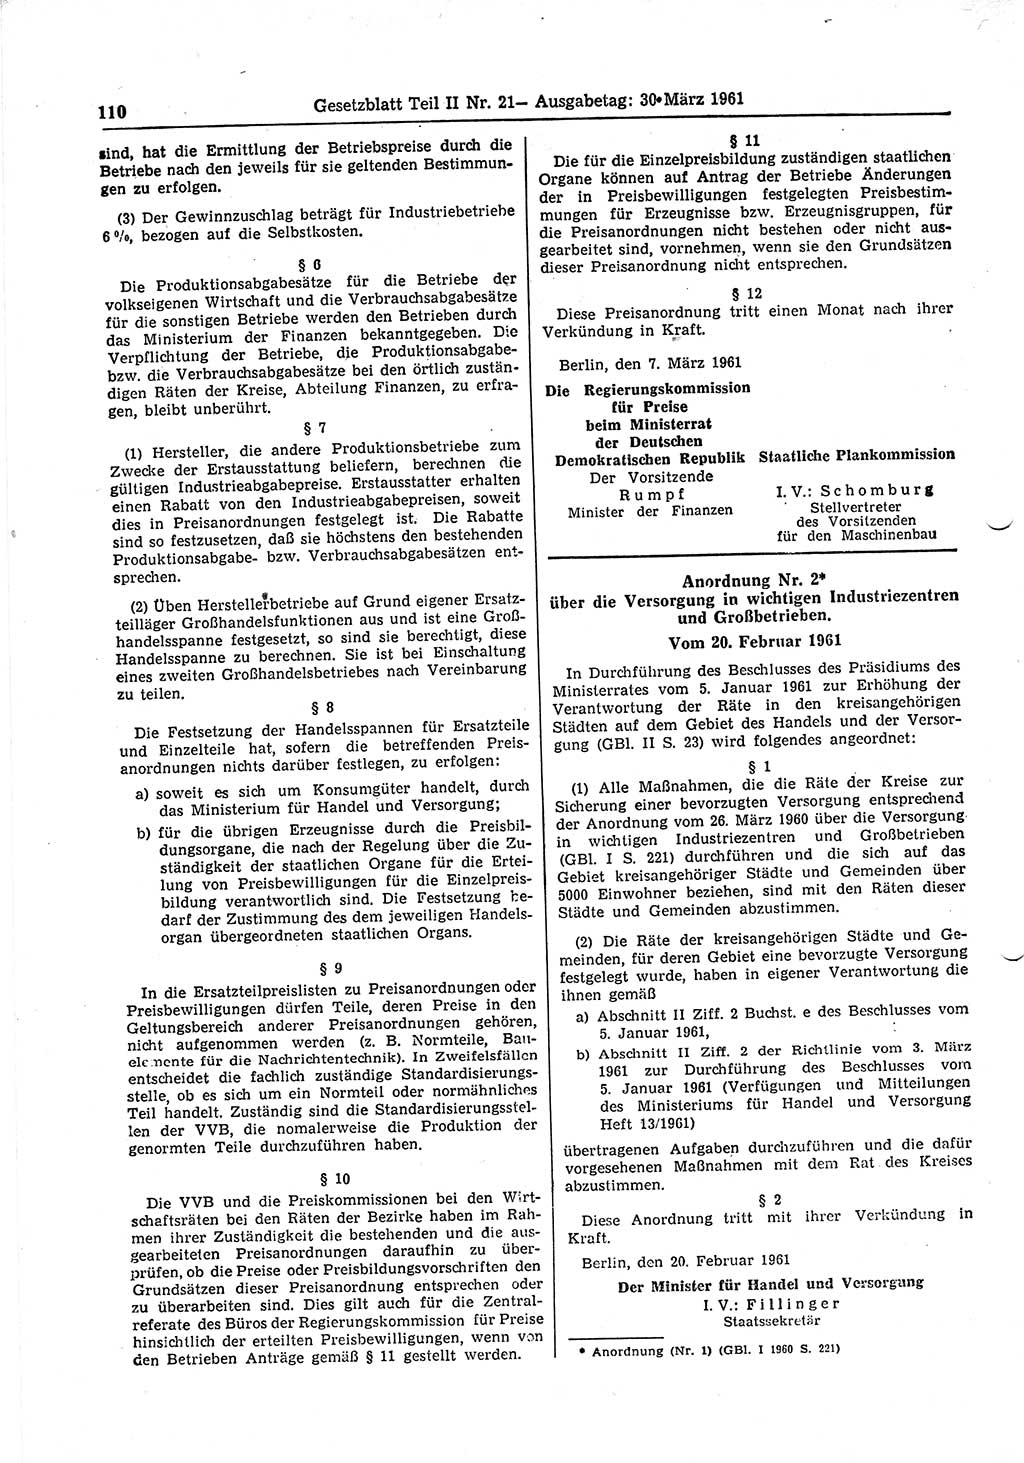 Gesetzblatt (GBl.) der Deutschen Demokratischen Republik (DDR) Teil ⅠⅠ 1961, Seite 110 (GBl. DDR ⅠⅠ 1961, S. 110)